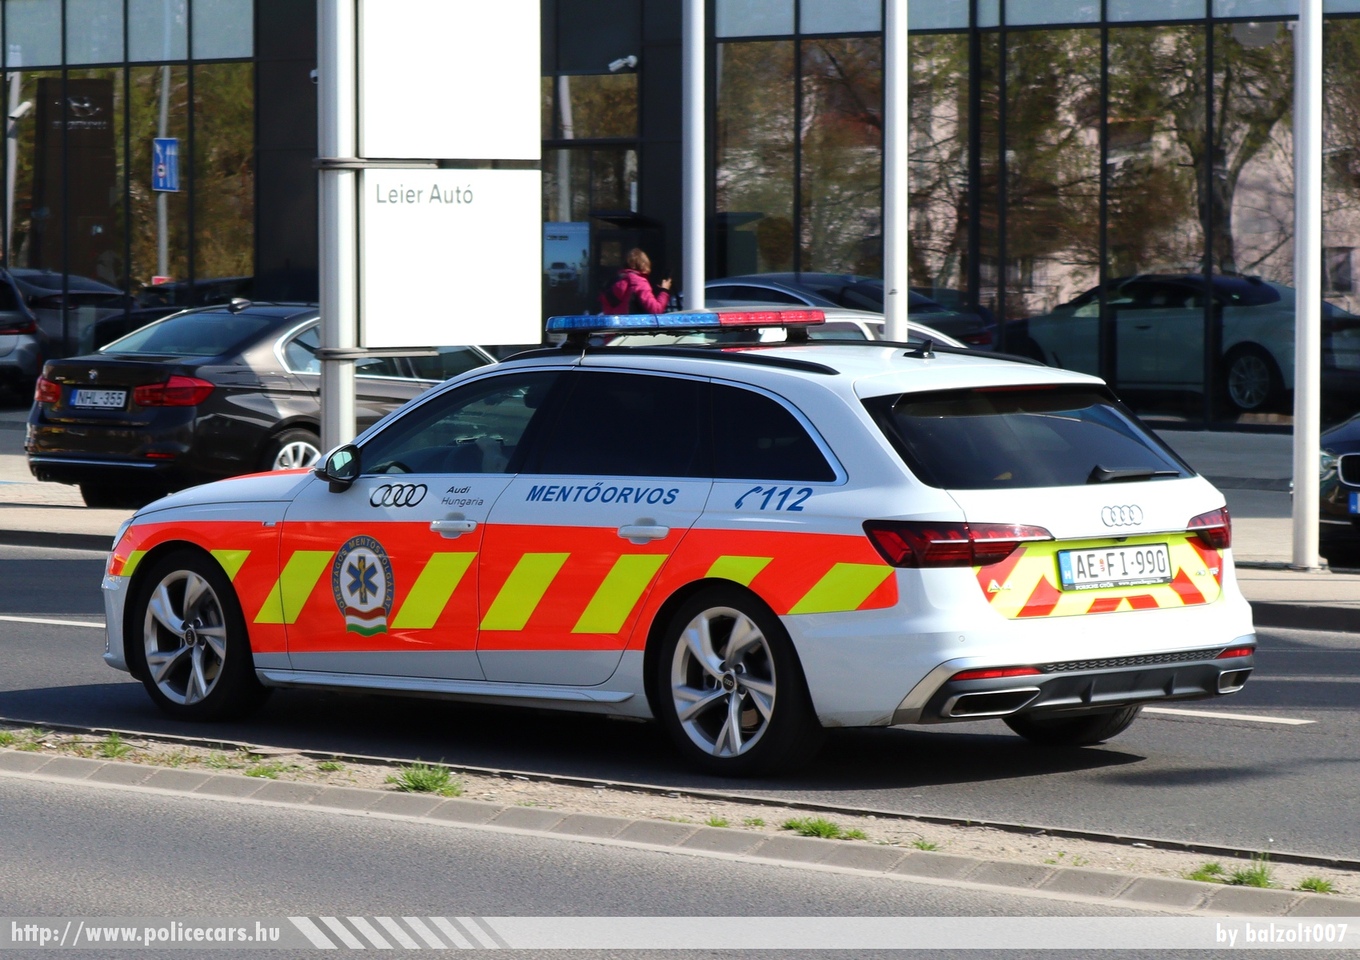 Audi A4 Avant, mentőorvosi kocsi, Országos Mentõszolgálat, Győr, fotó: balzolt007
Keywords: mentő magyar Magyarország mentőautó ambulance Hungary hungarian AEFI-990 MOK